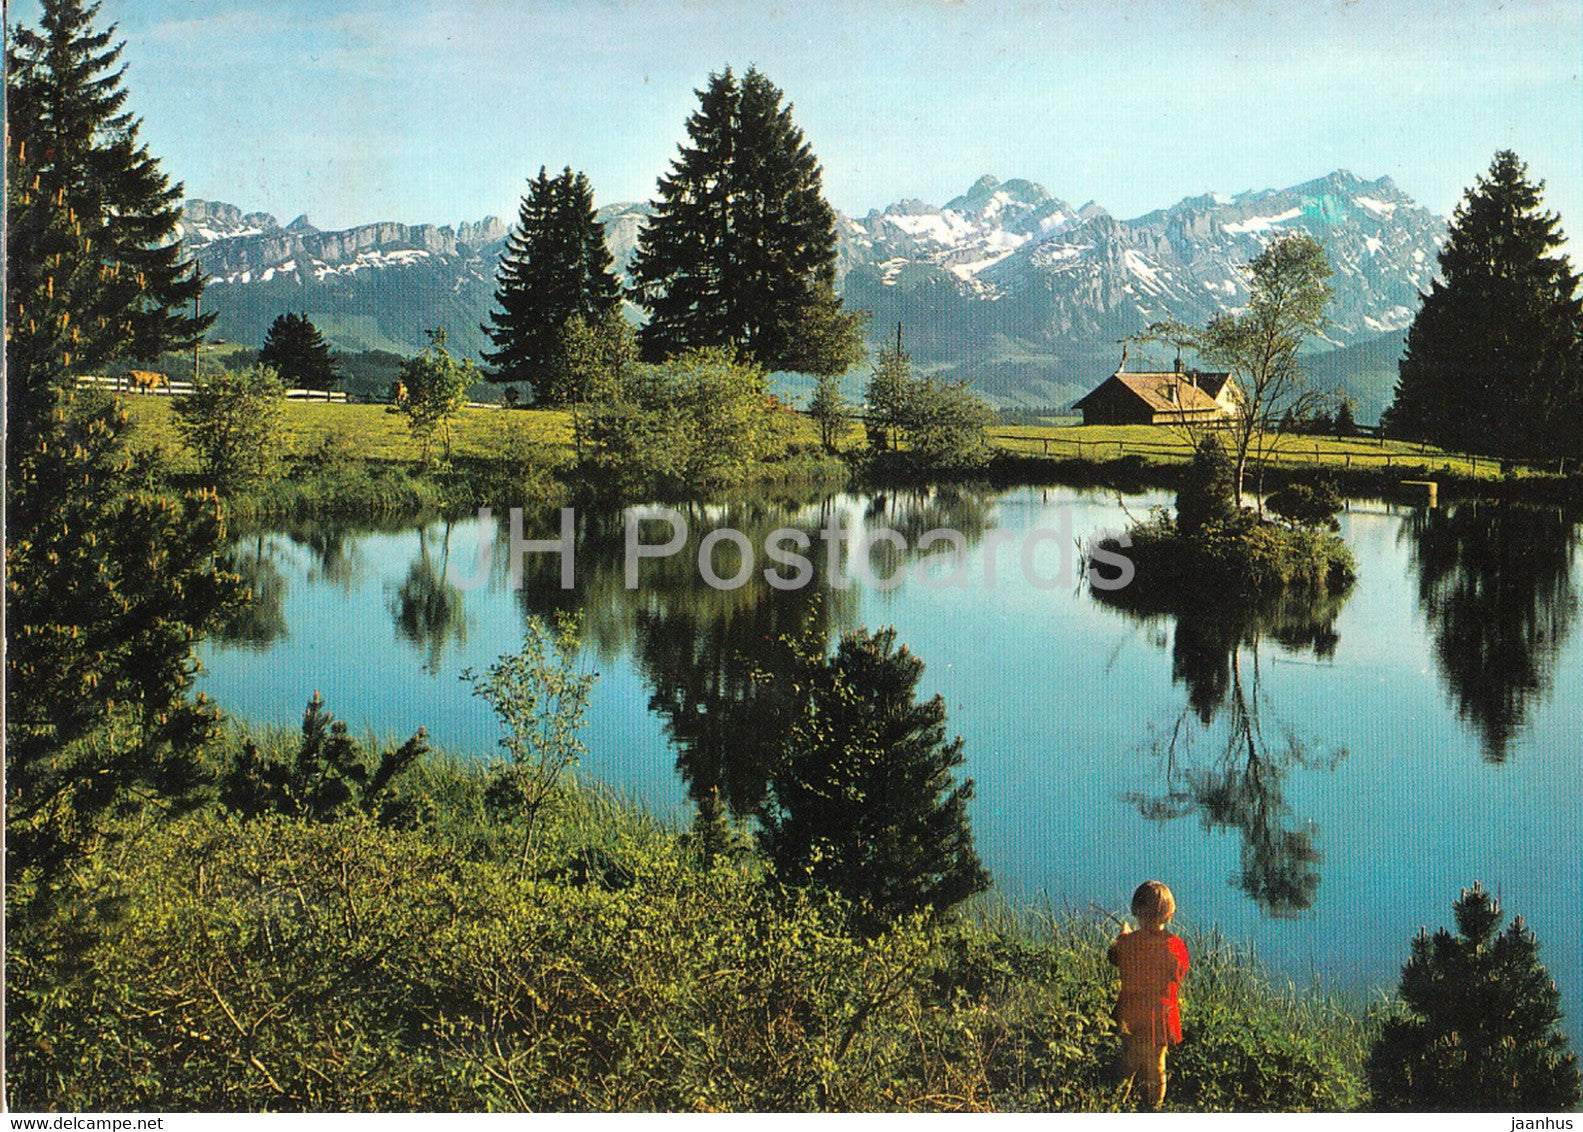 Auf dem Gabris ob Gais - Blick zum Alpstein - 1979 - Switzerland - used - JH Postcards